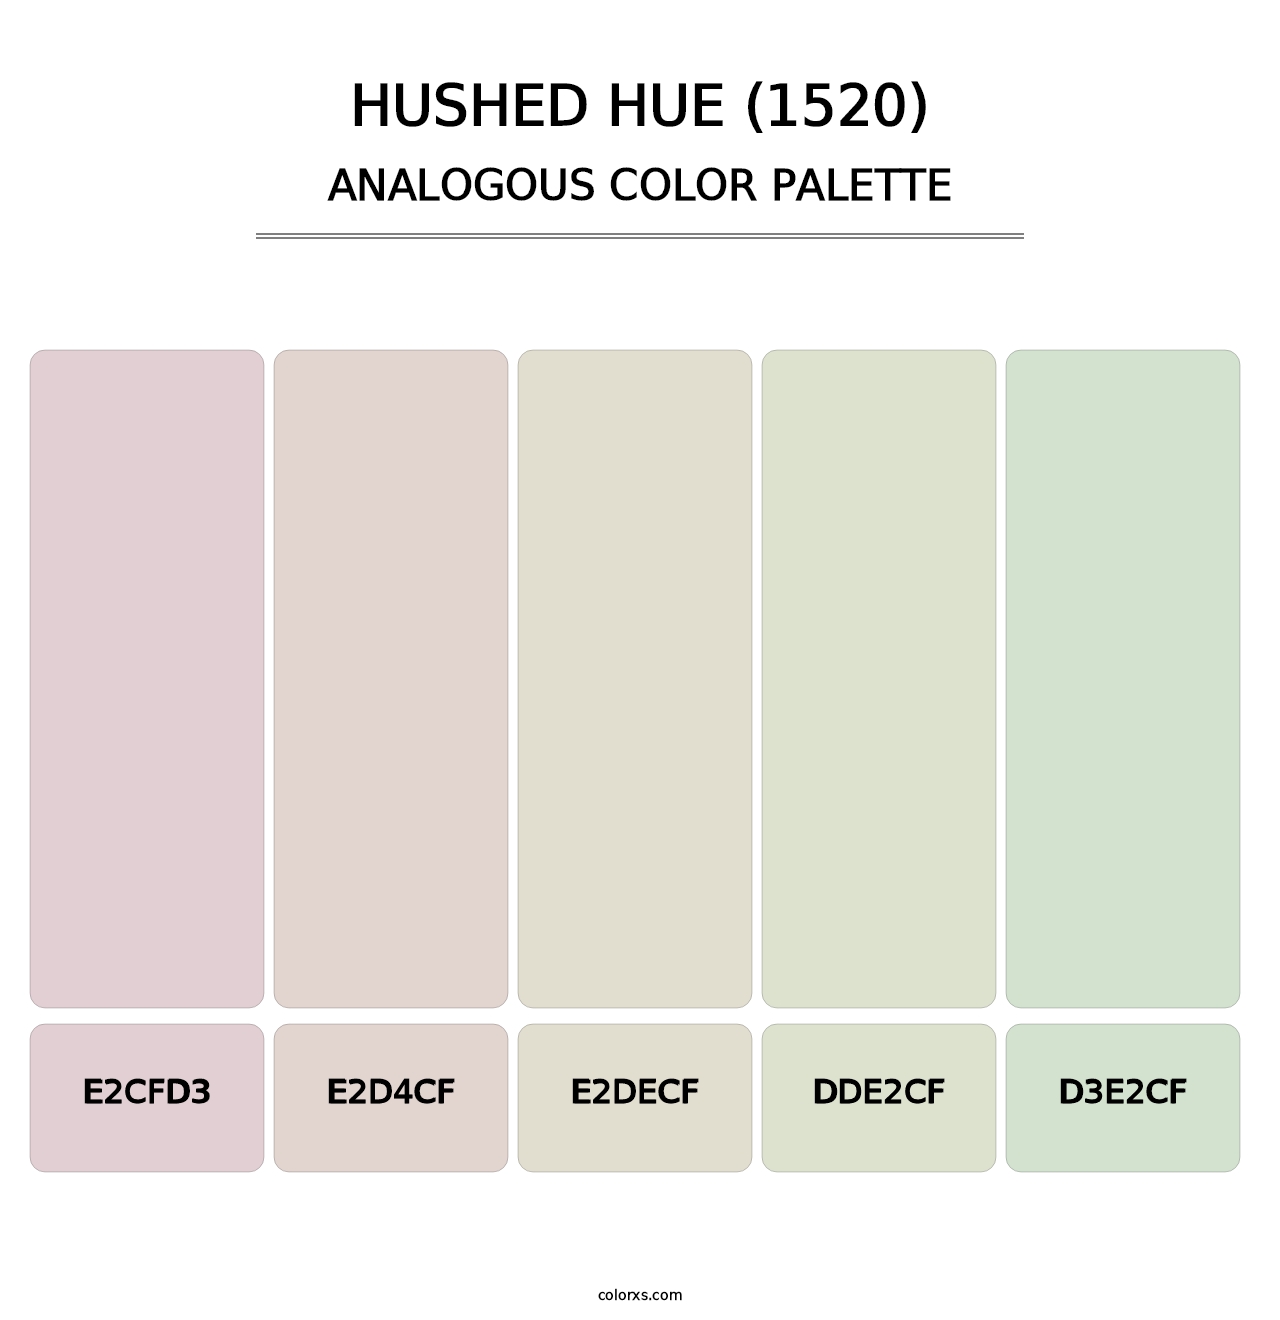 Hushed Hue (1520) - Analogous Color Palette